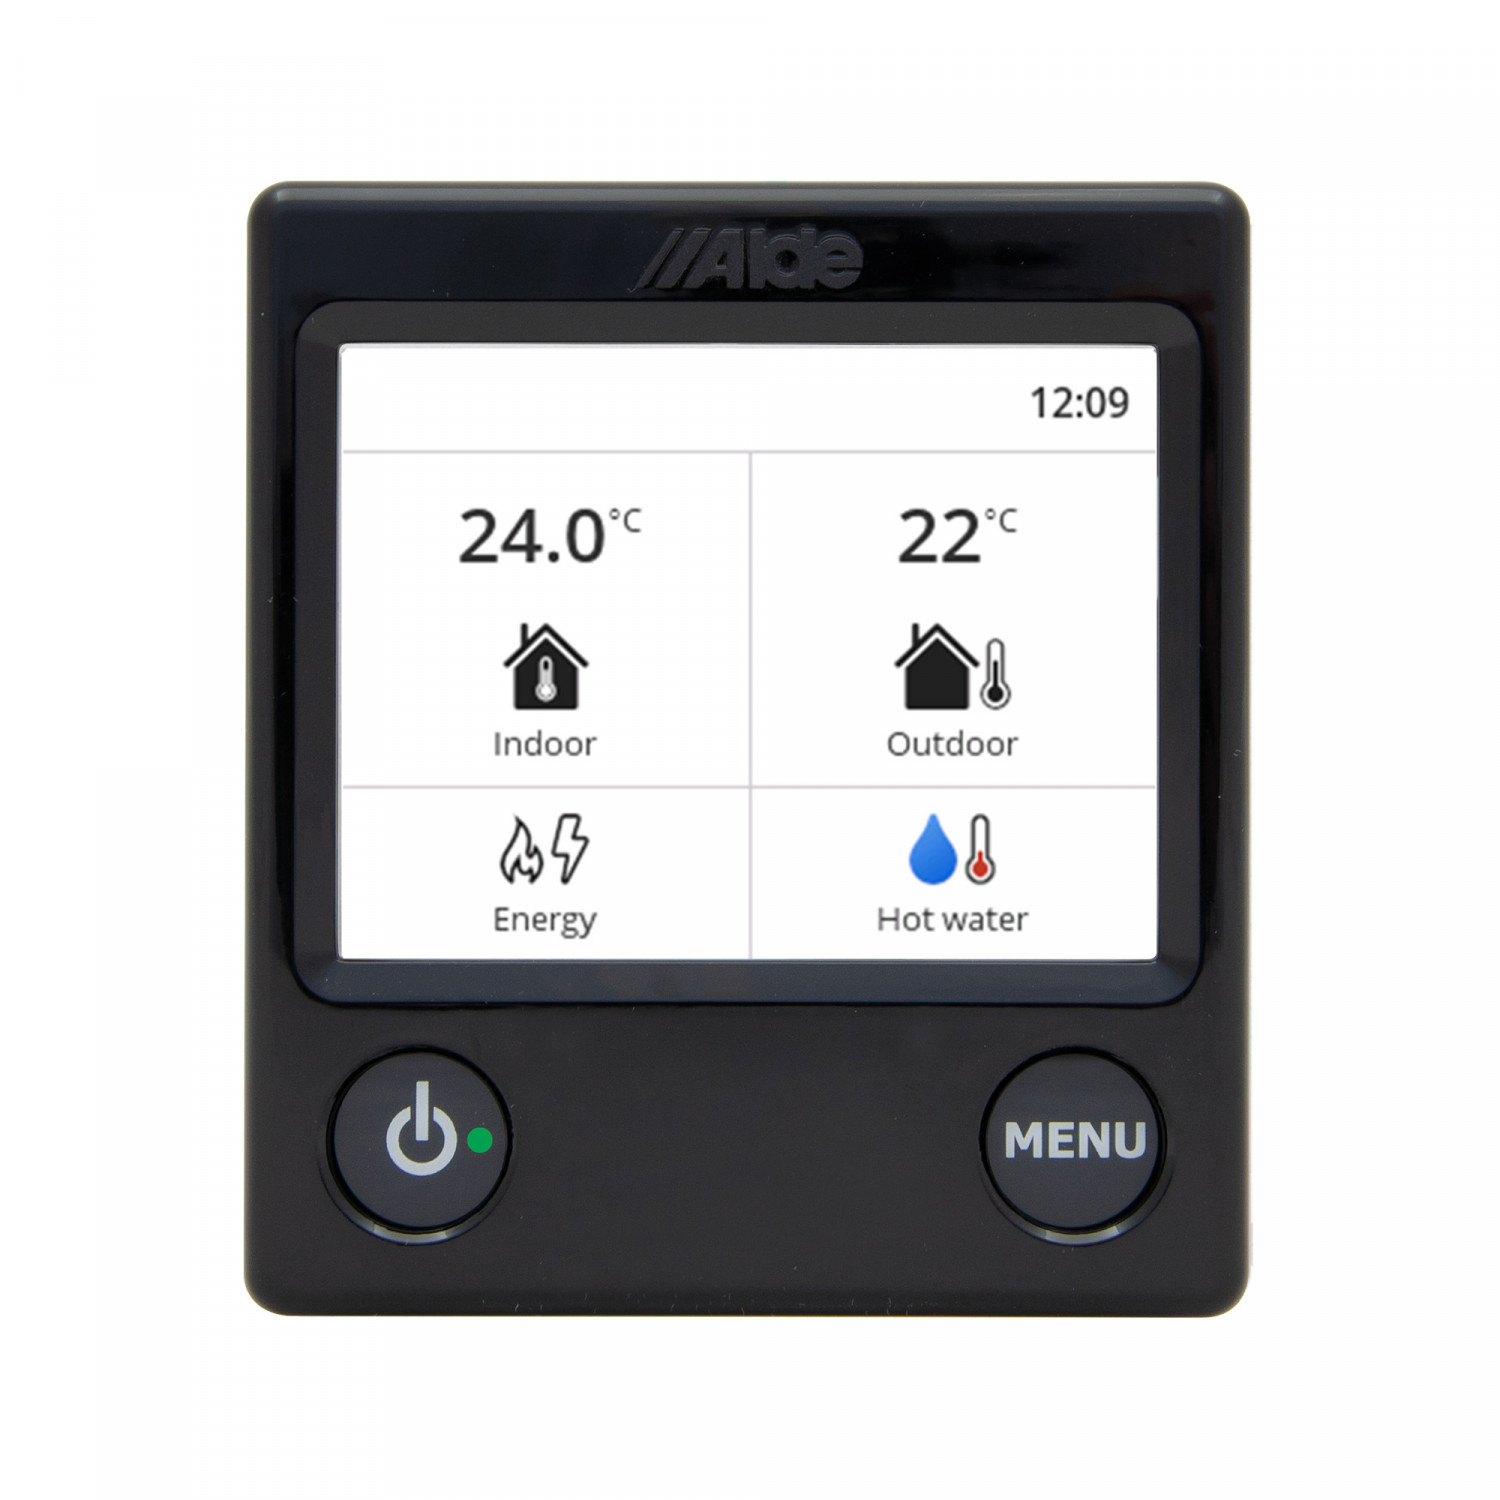 ALDE Schaltpaneel 3030 Farb-Touchscreen, schwarz